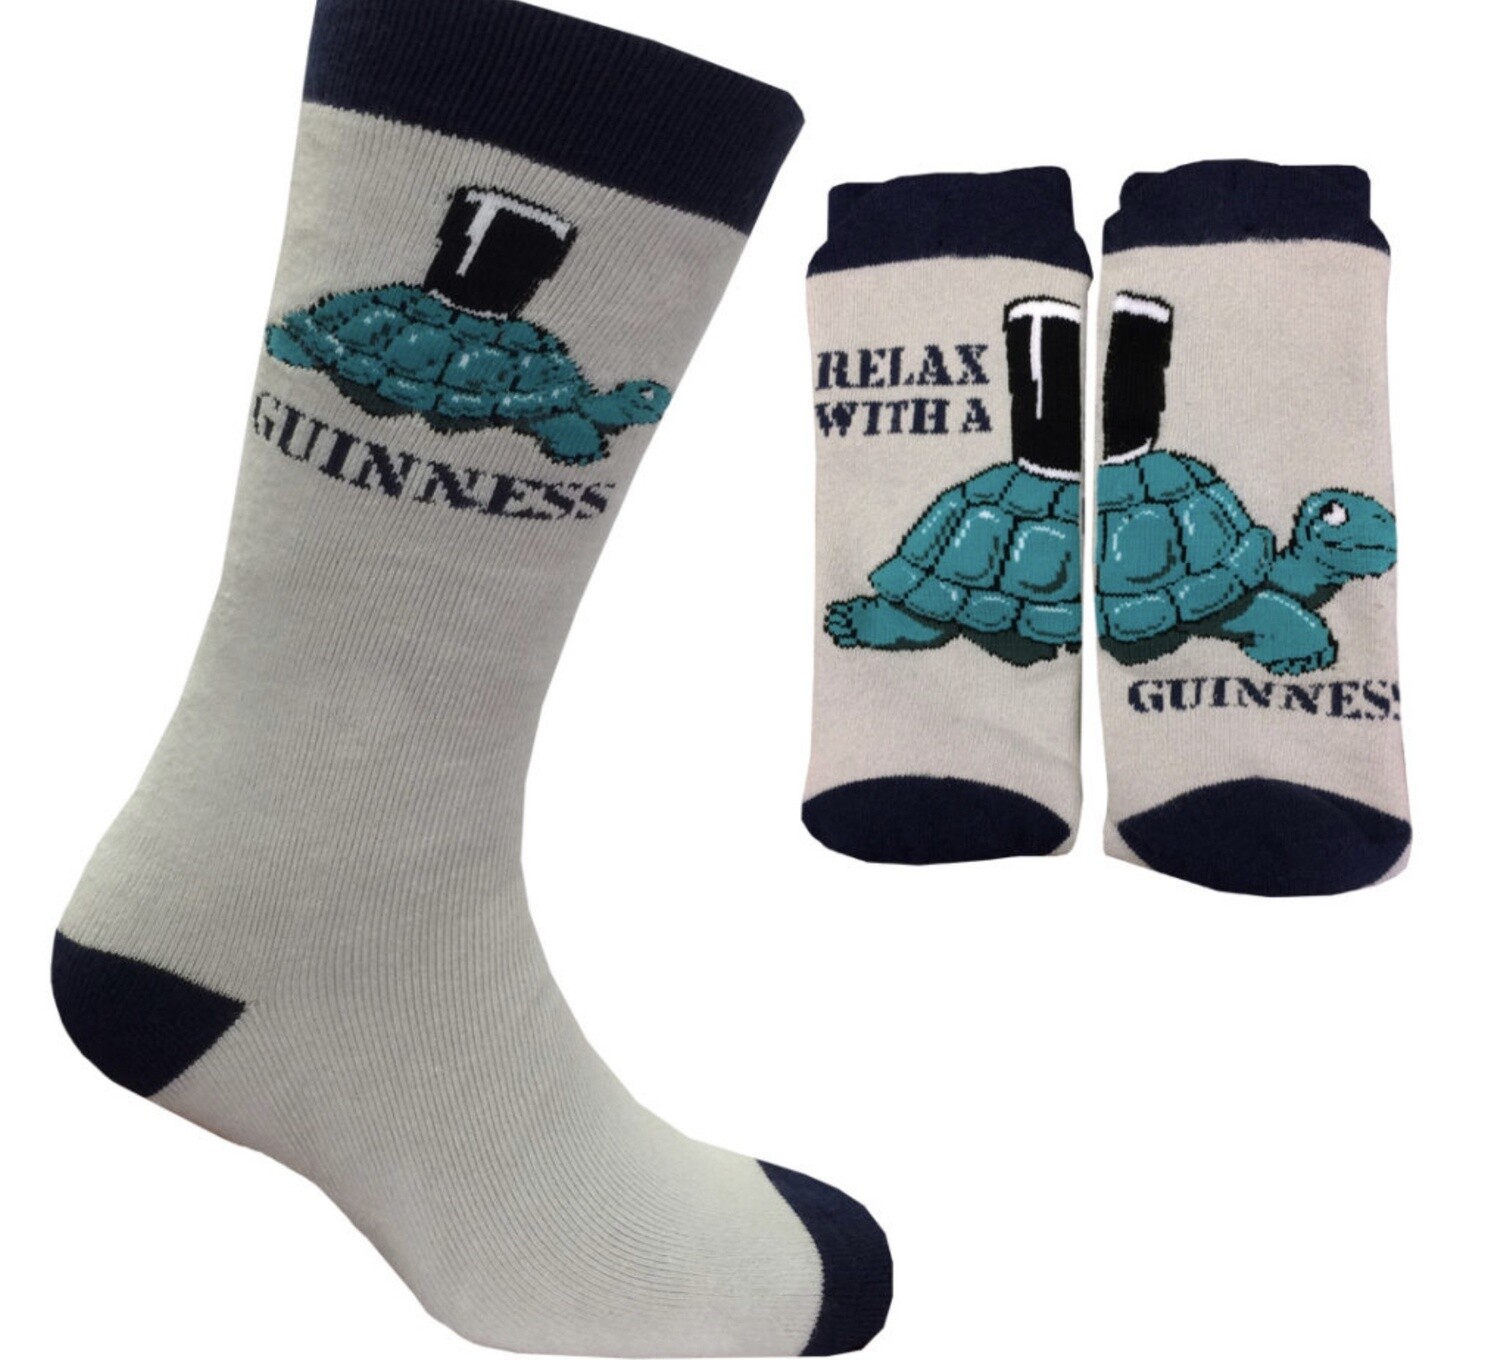 Guinness socks - Relax